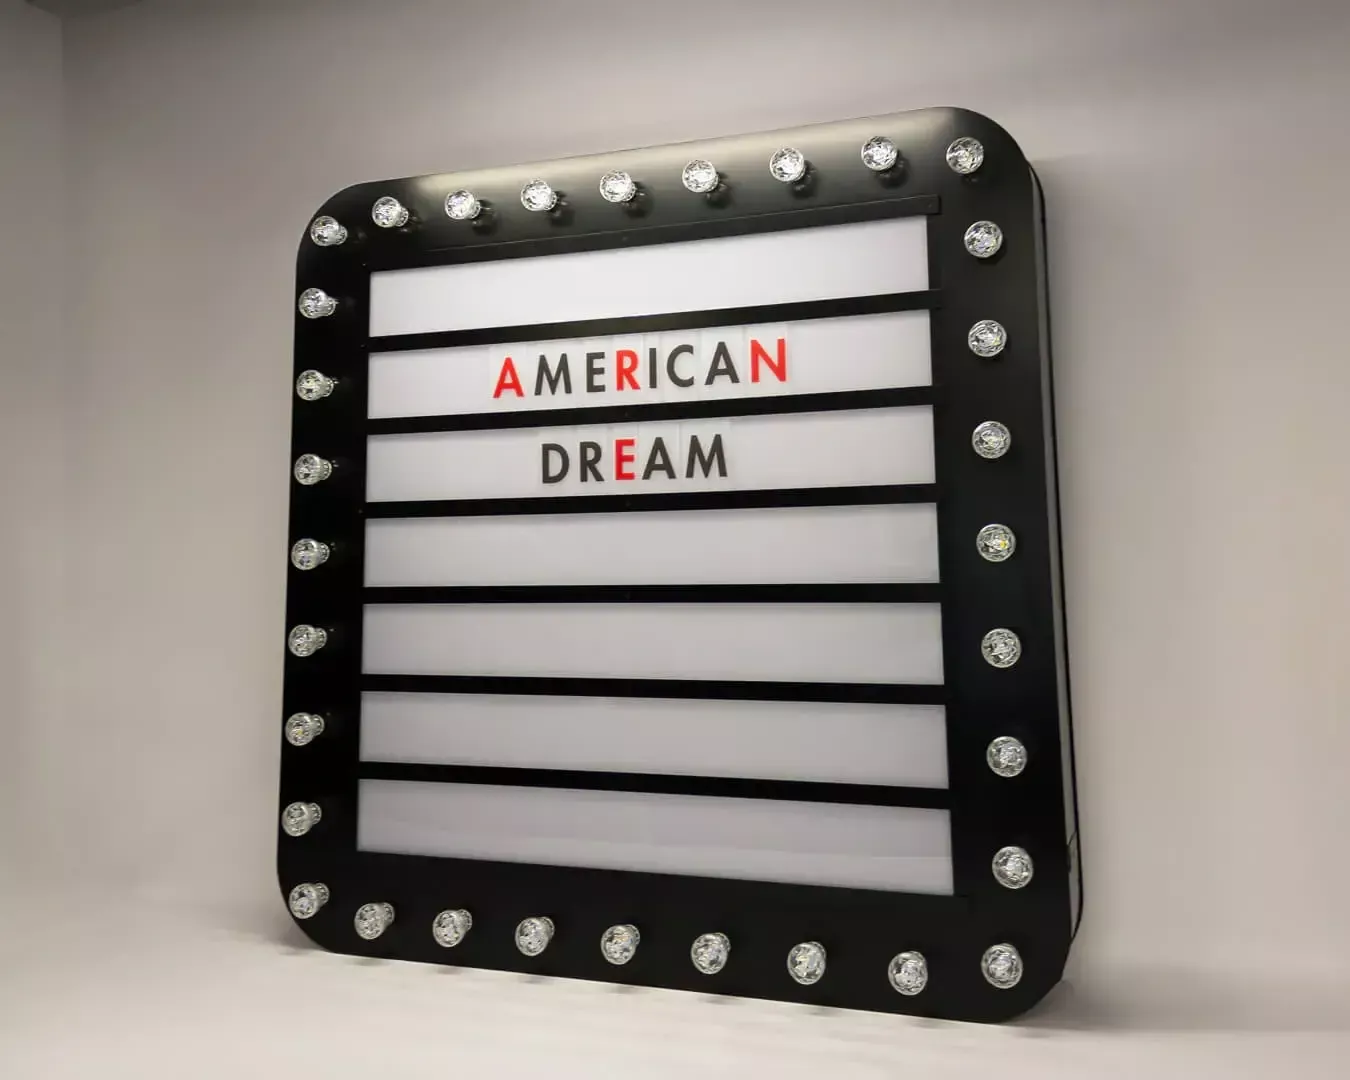 Il sogno americano - Una lavagna a forma di lampadina, con lettere intercambiabili, in stile retrò.